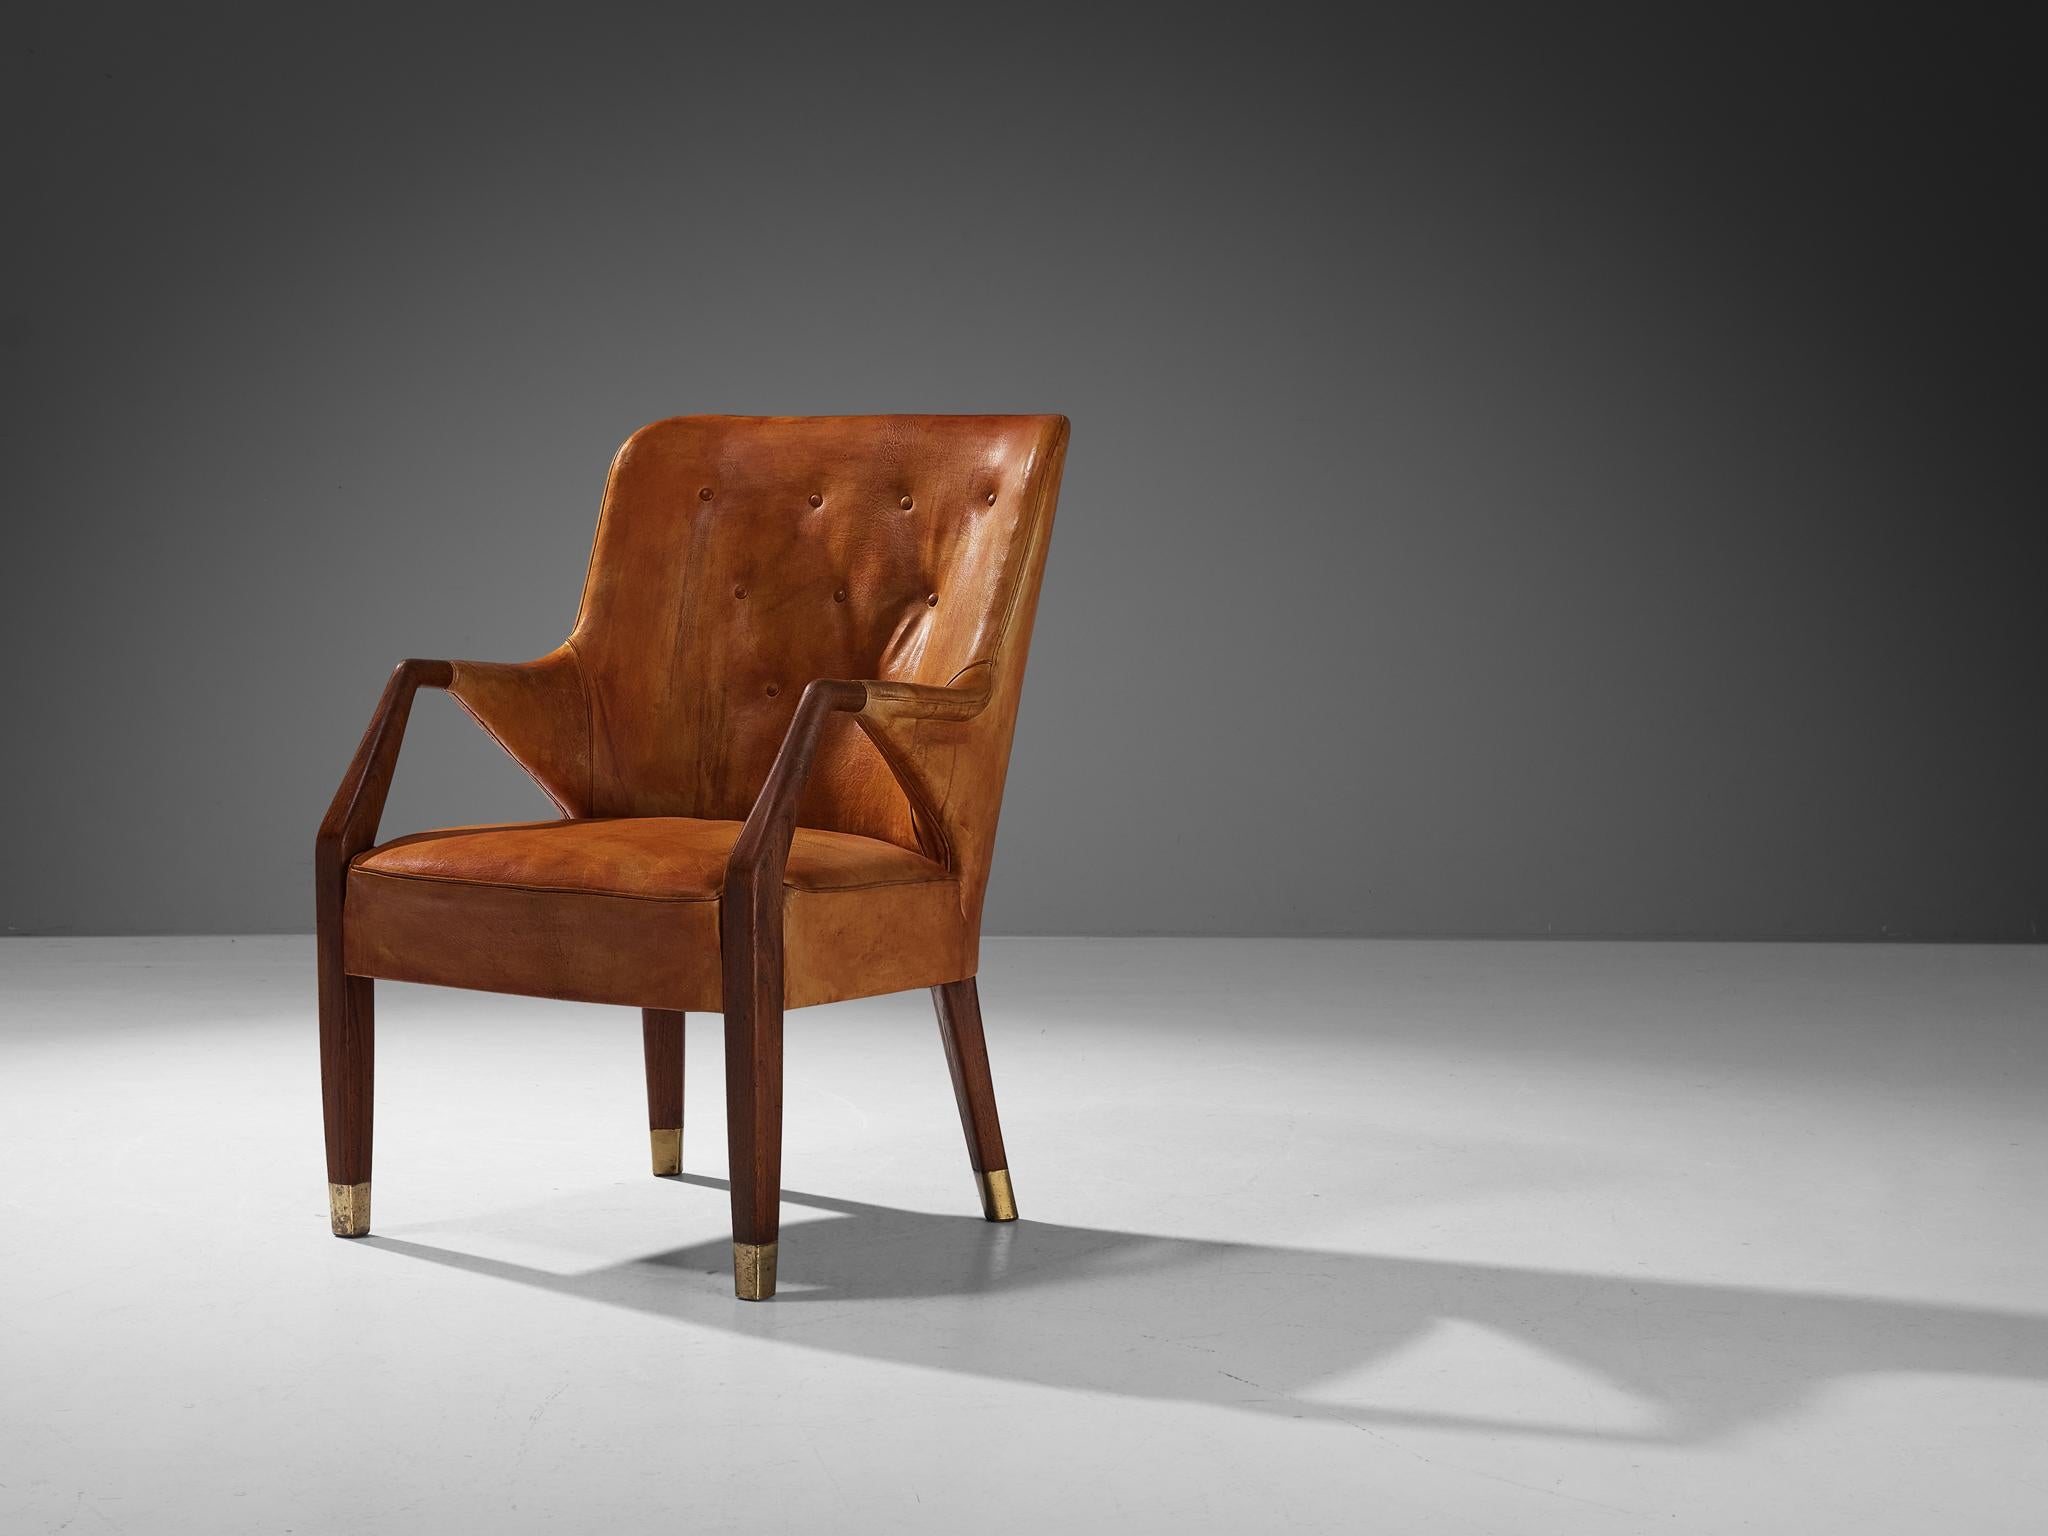 Peter Hvidt & Orla Mølgaard-Nielsen pour Gustav Bertelsen, fauteuil, teck, cuir niger, laiton, Danemark, conçu en 1948 et fabriqué à la fin des années 1940.

Chaise longue au design précoce, créée par le duo de designers danois Peter Hvidt et Orla